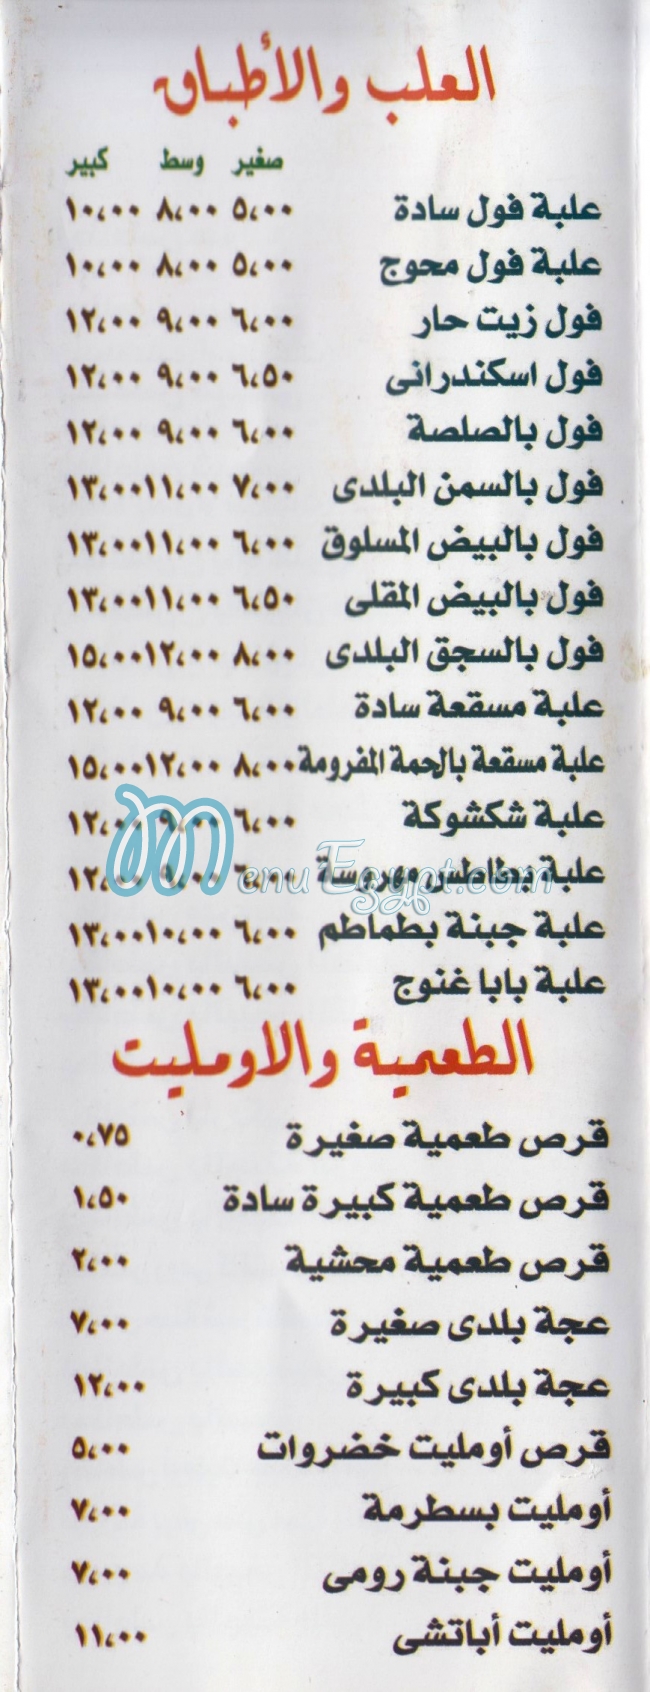 Abo Ali menu Egypt